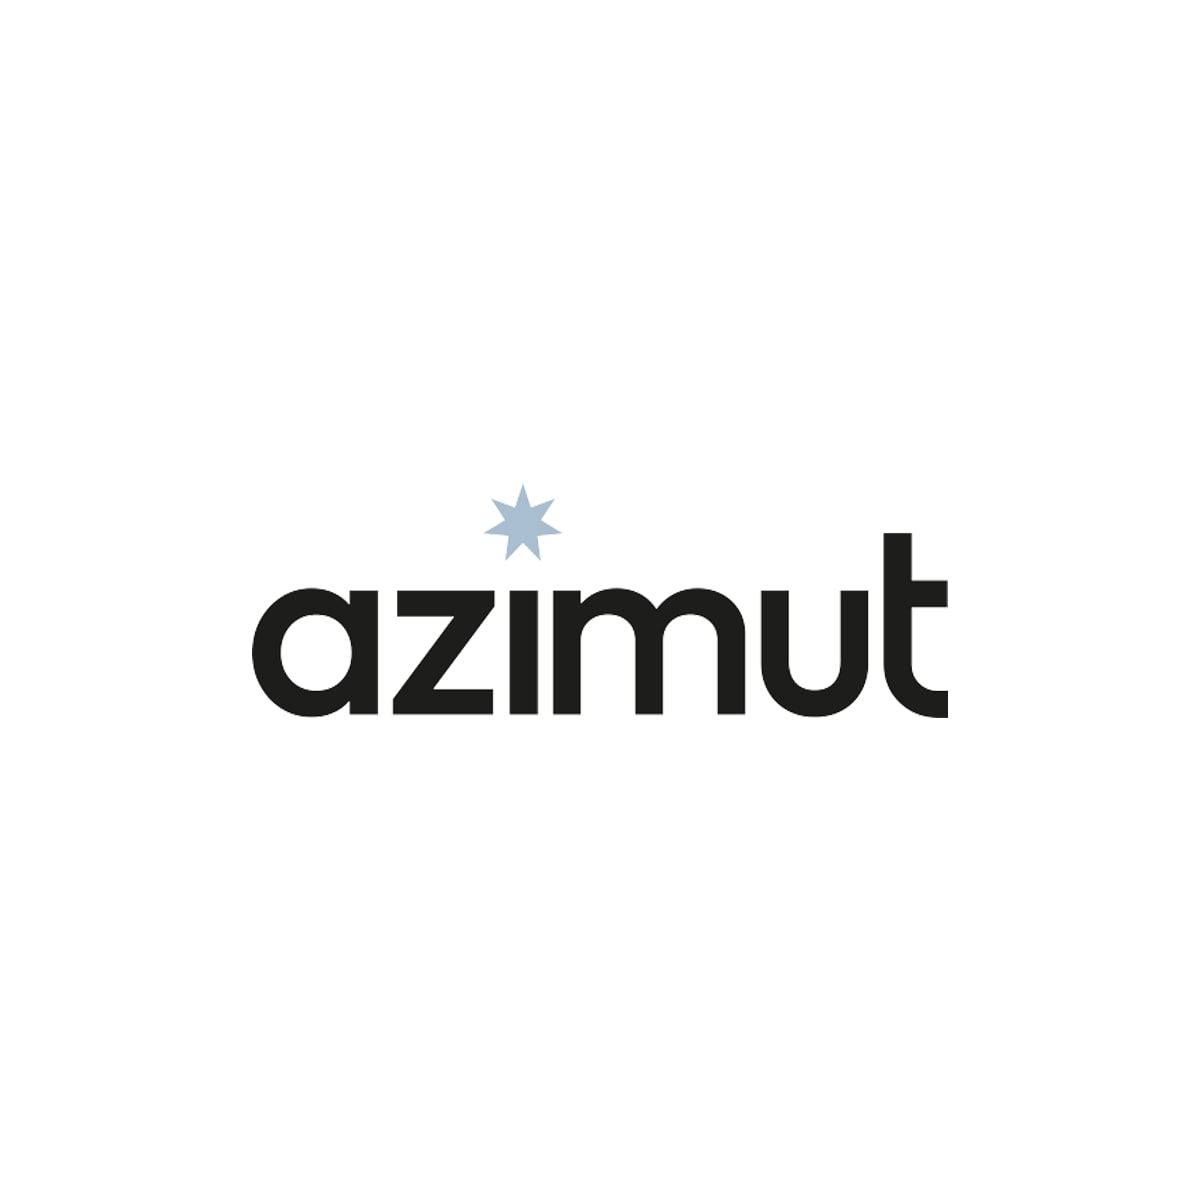 azimut_7